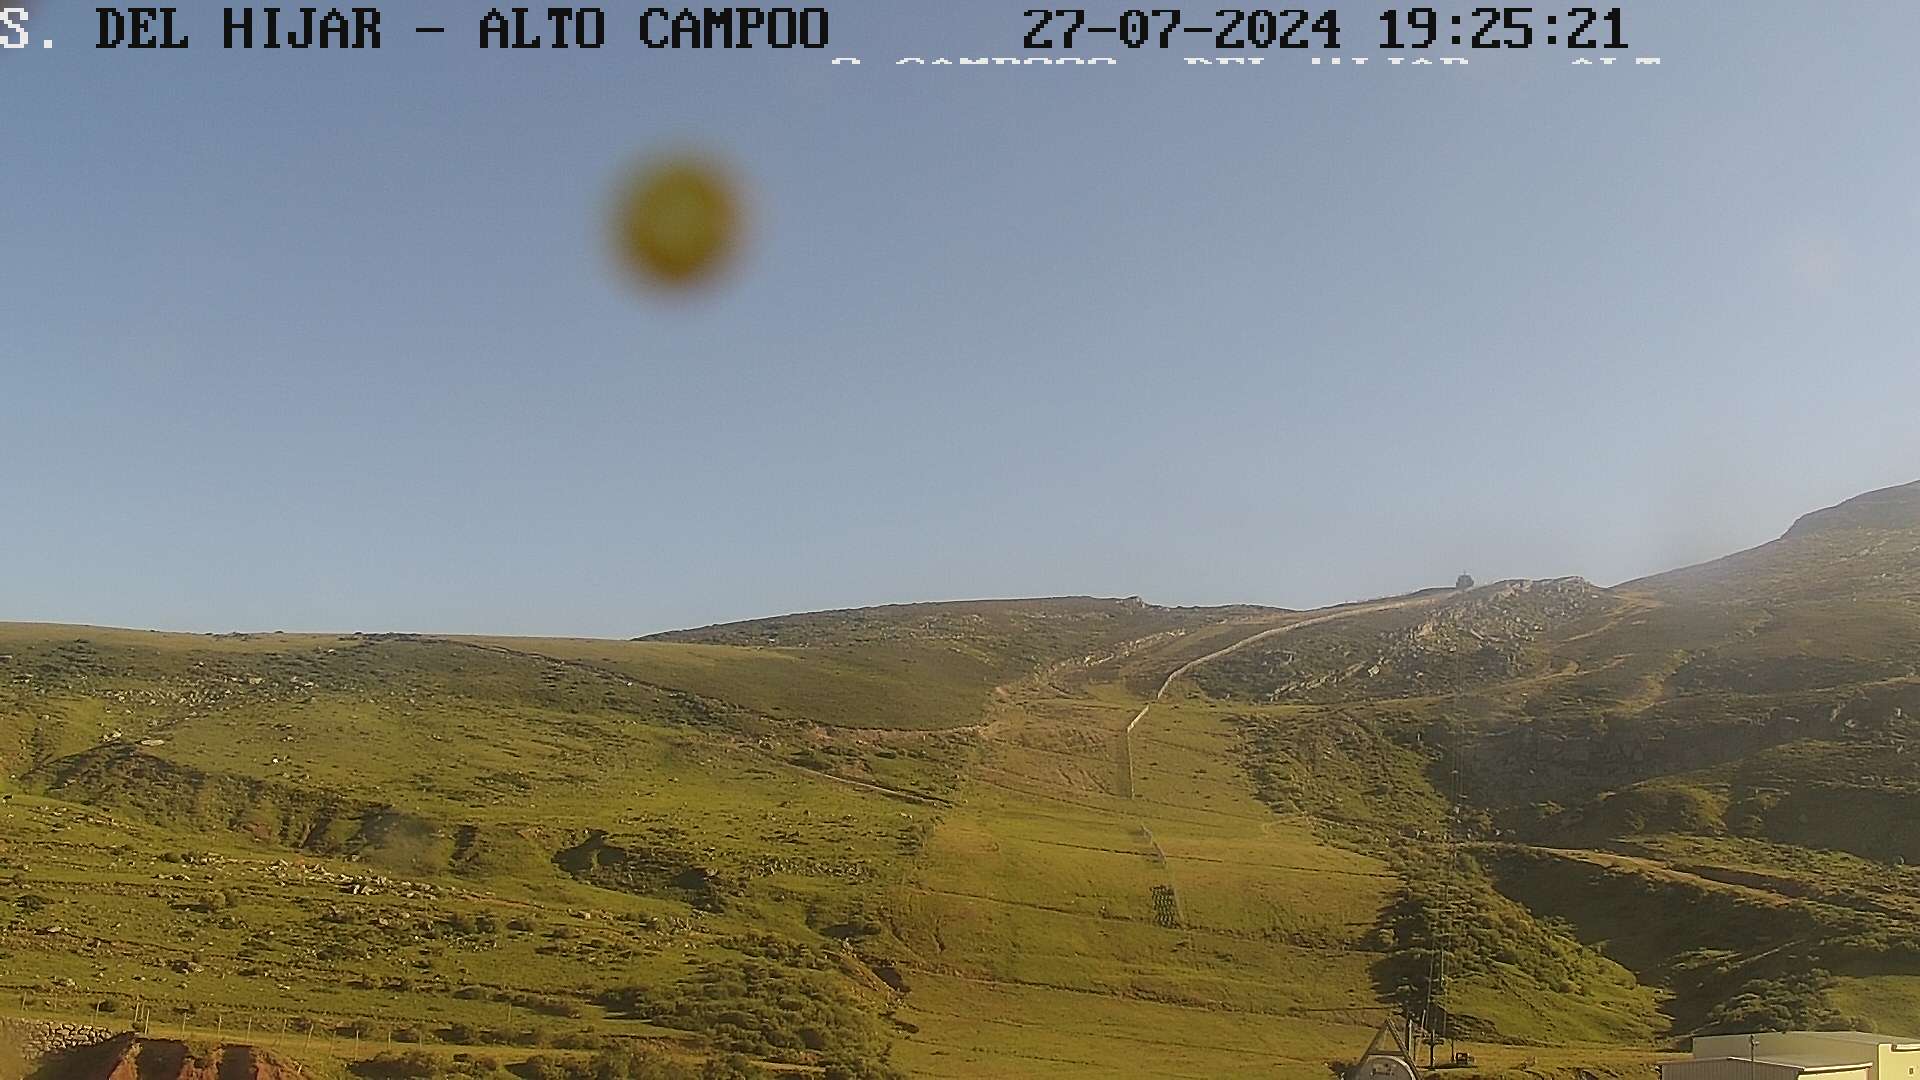 Webcam en Sierra del Hijar - El Castro